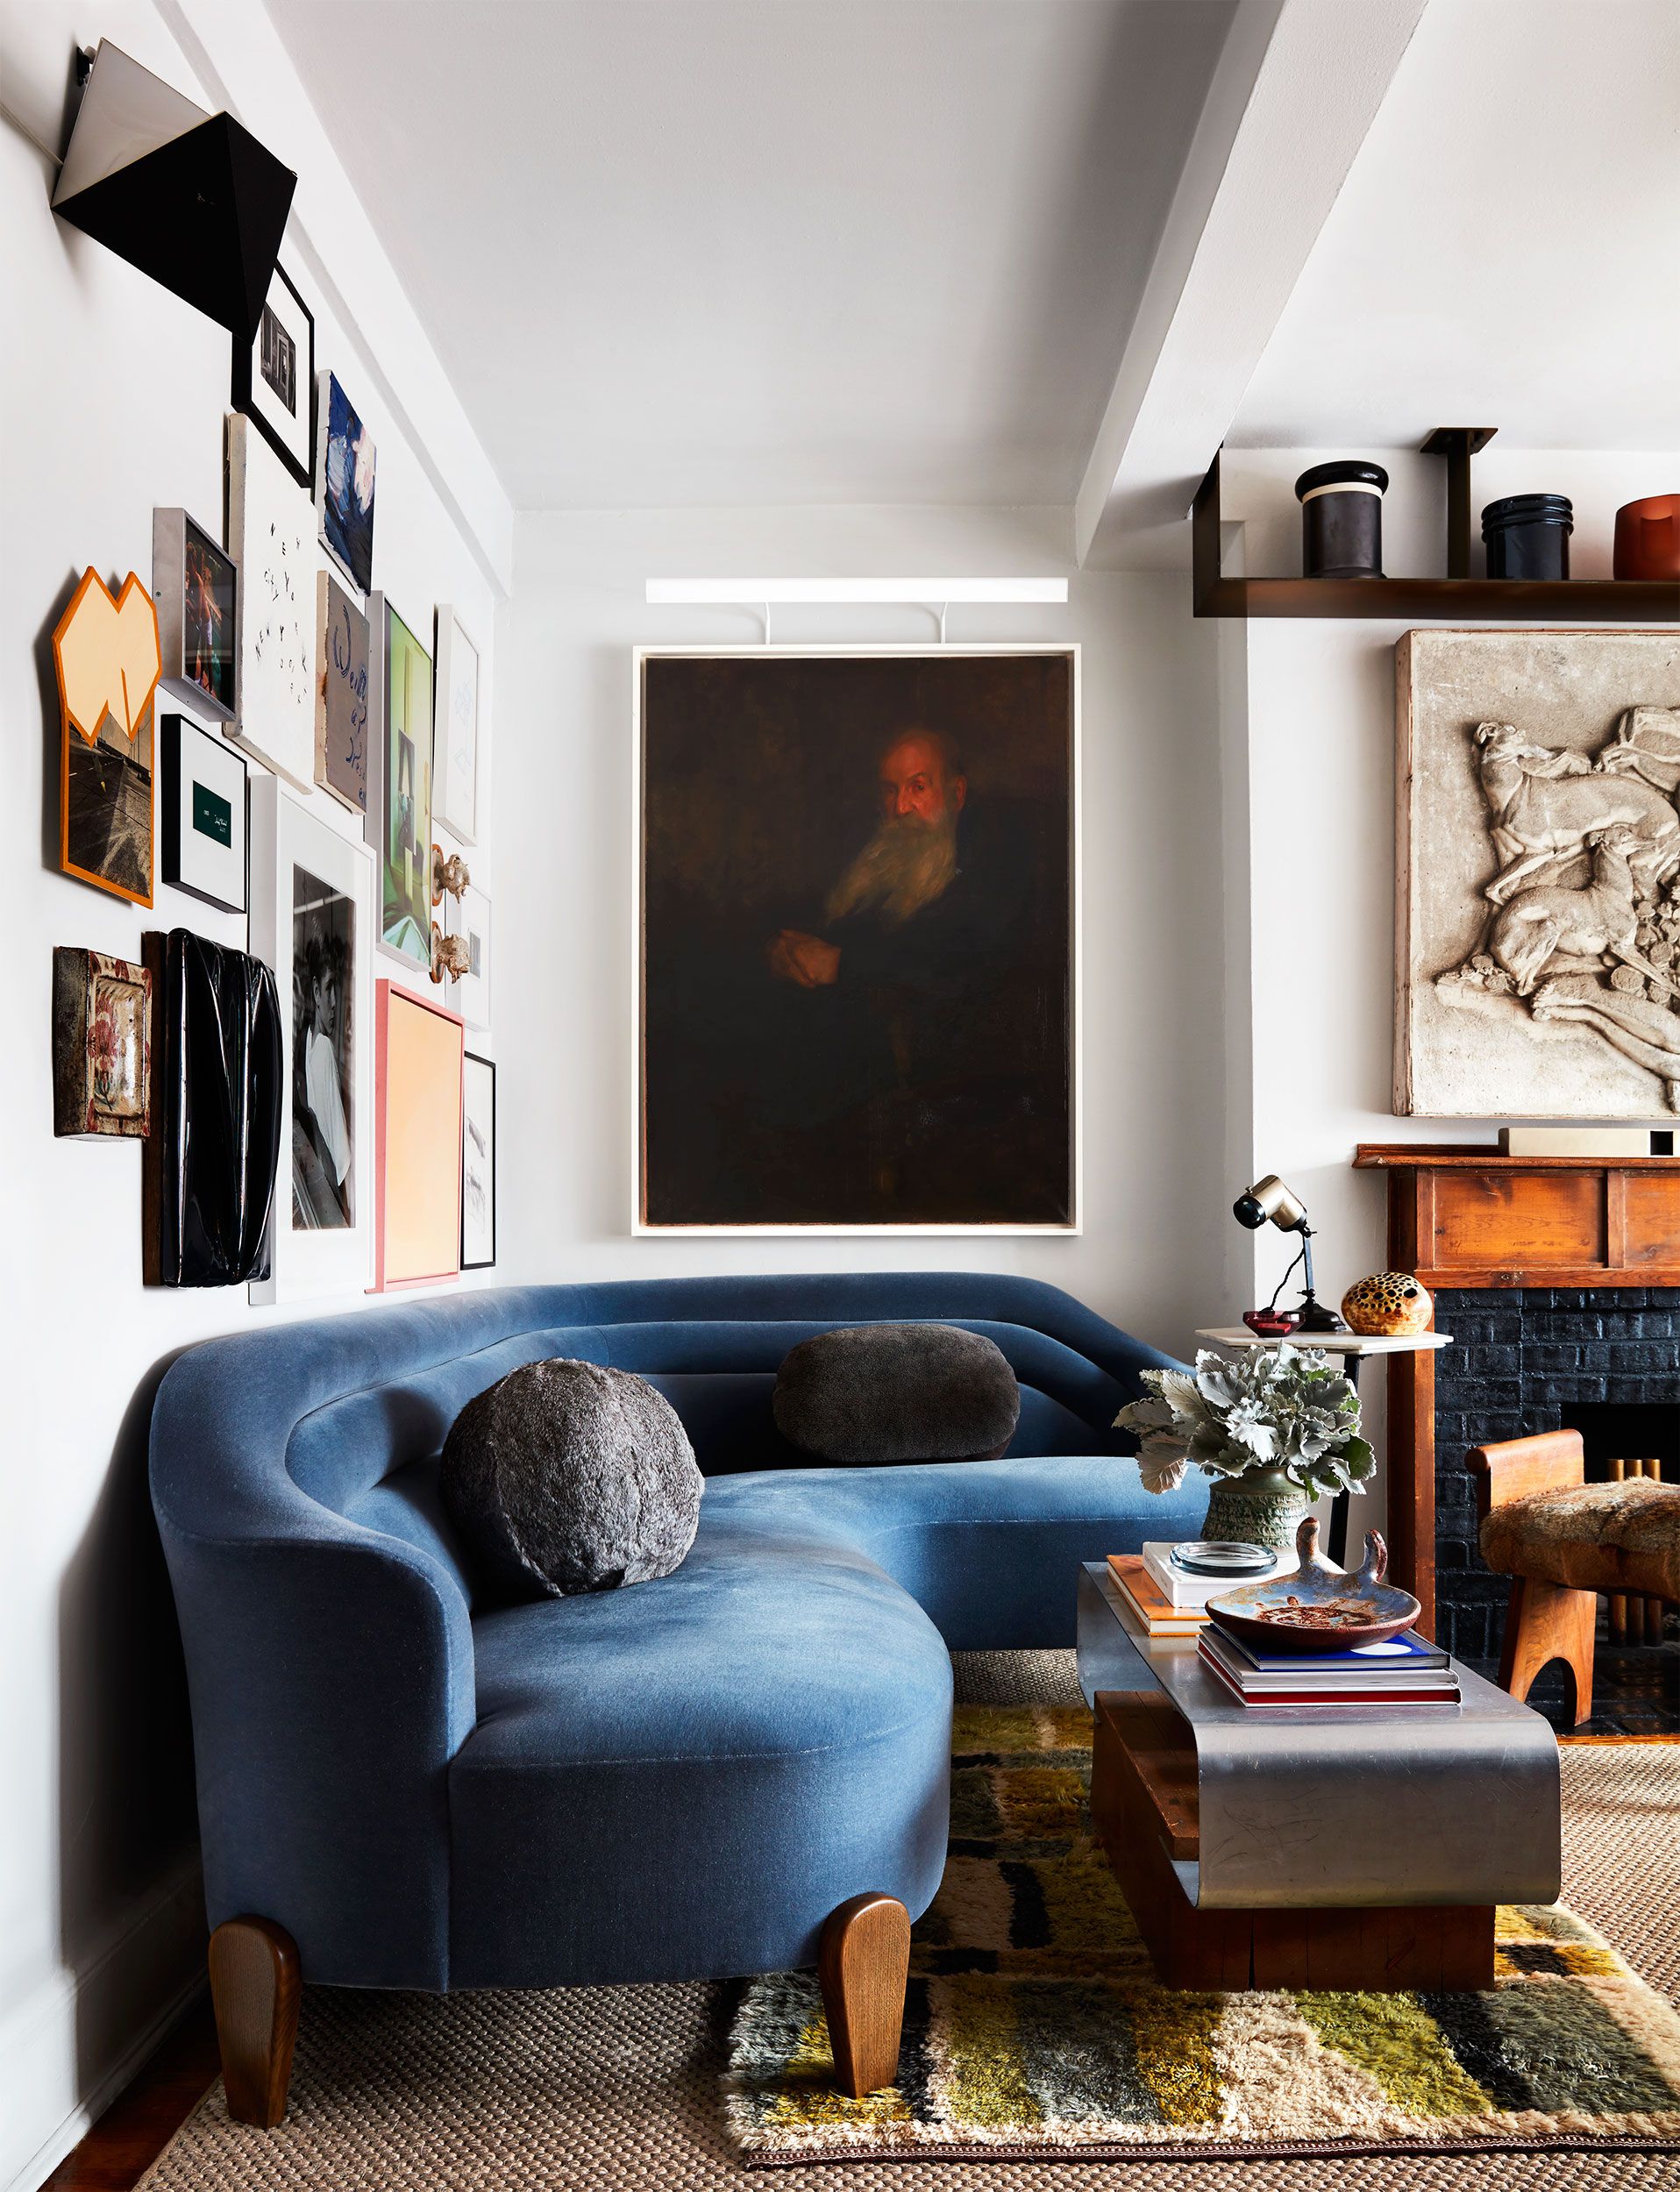 arrange living room furniture app